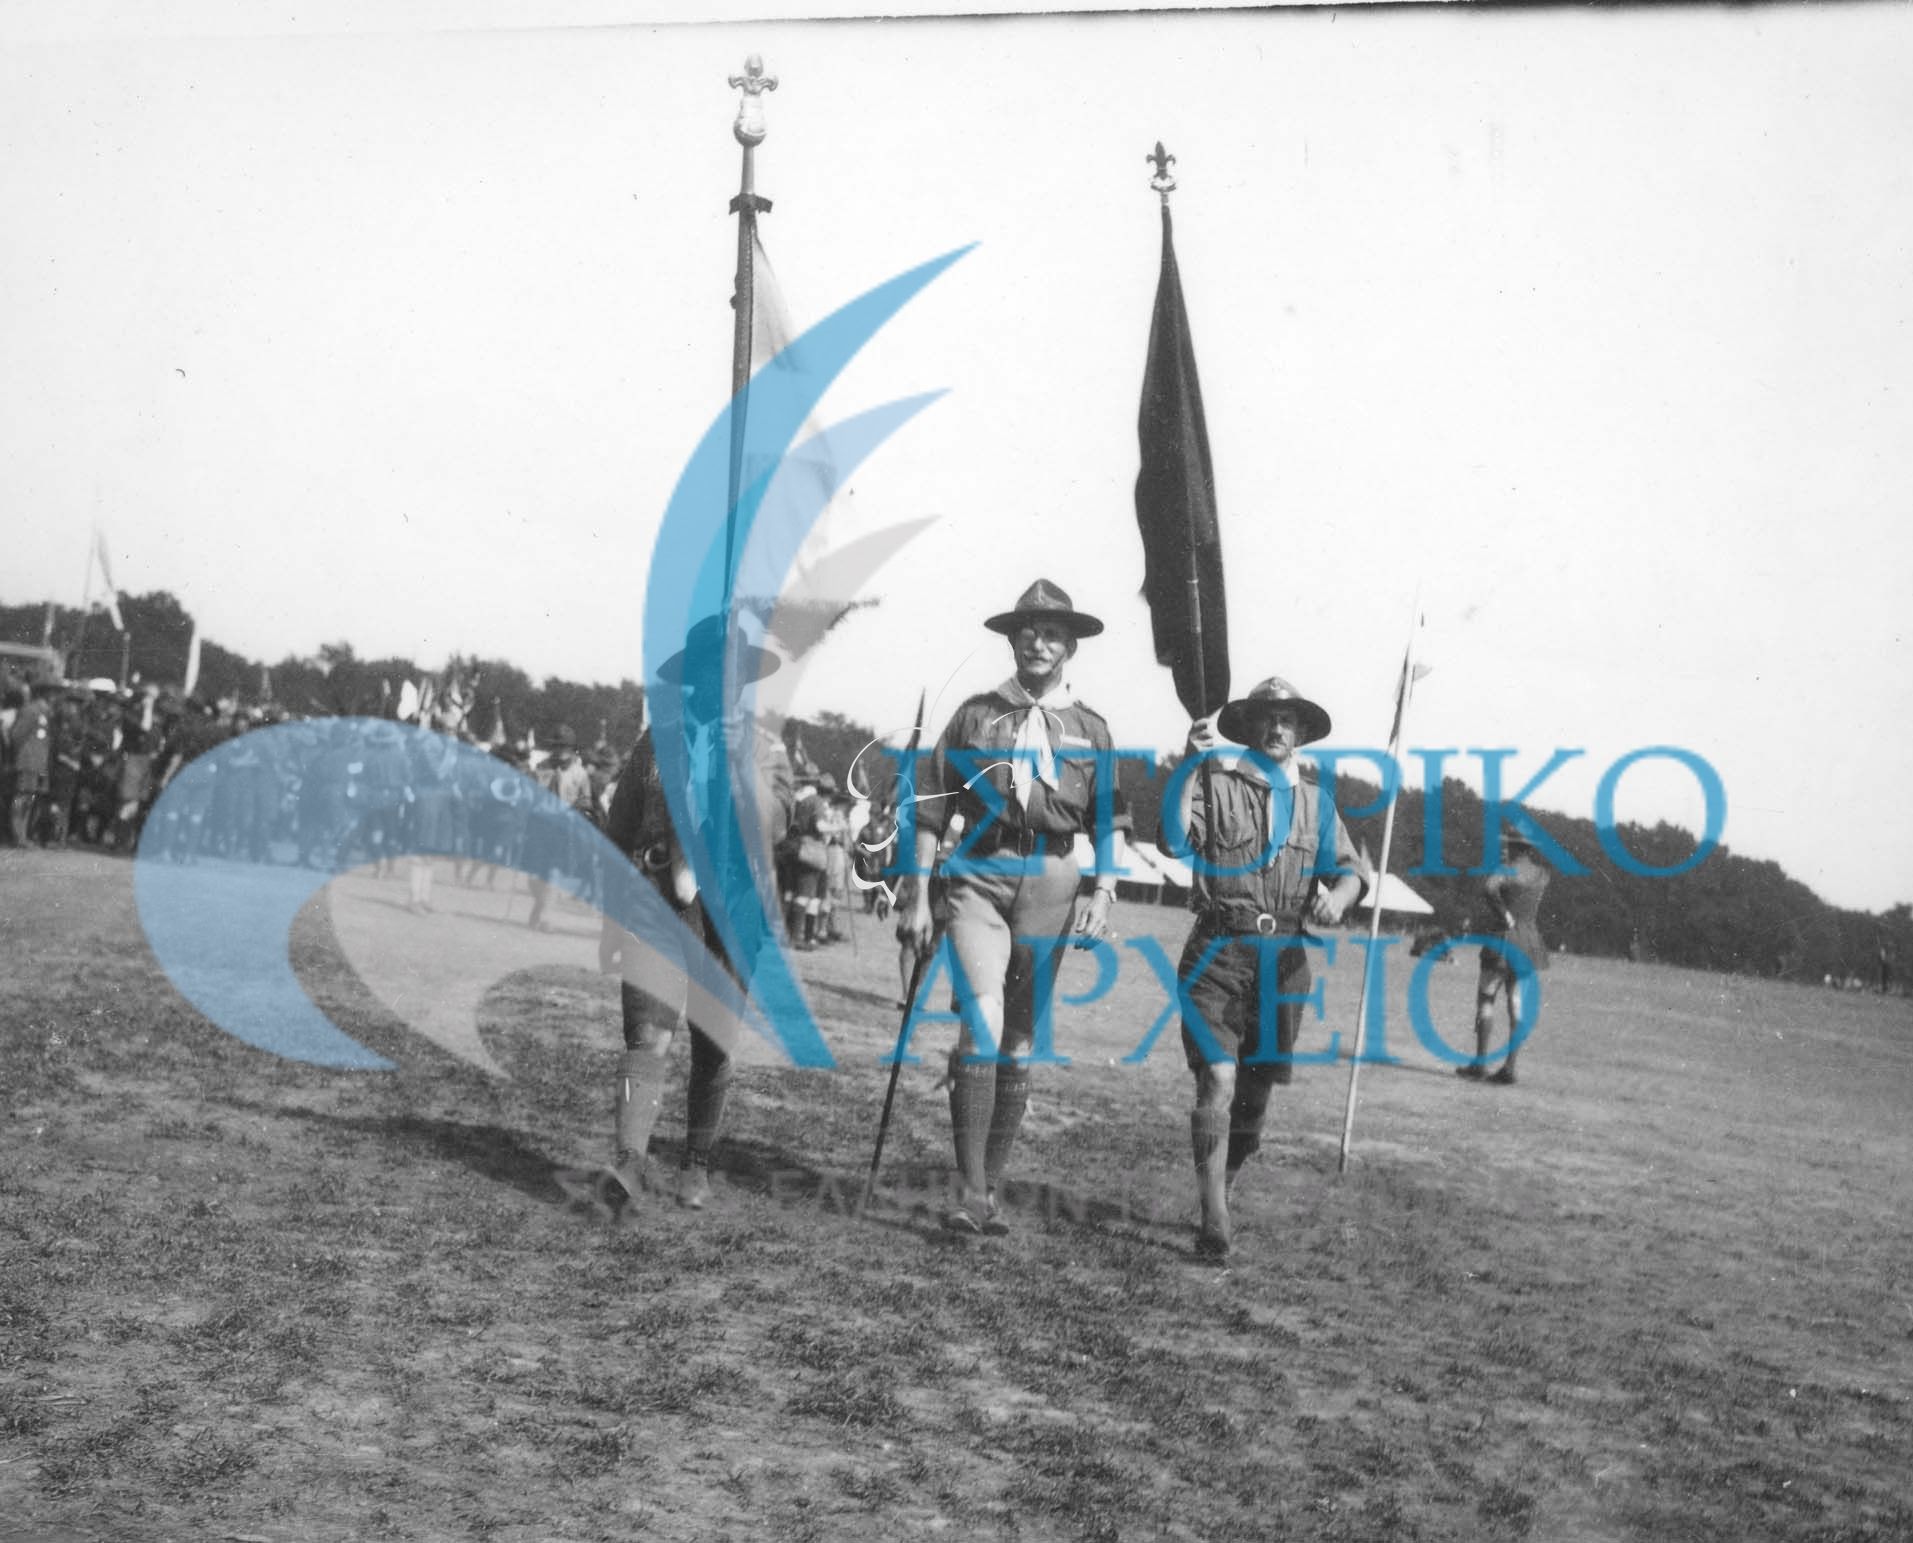 Ο Γενικός Έφορος Αντώνης Μπενάκης, με τον Αρχηγό της ελληνικής προσκοπικής Αποστολής Σπ.Βλάχο στο Τζάμπορη της Αγγλίας το 1929 με την ΕλληνικήΣημαία και την αναμνηστική σημαία του Τζάμπορη.